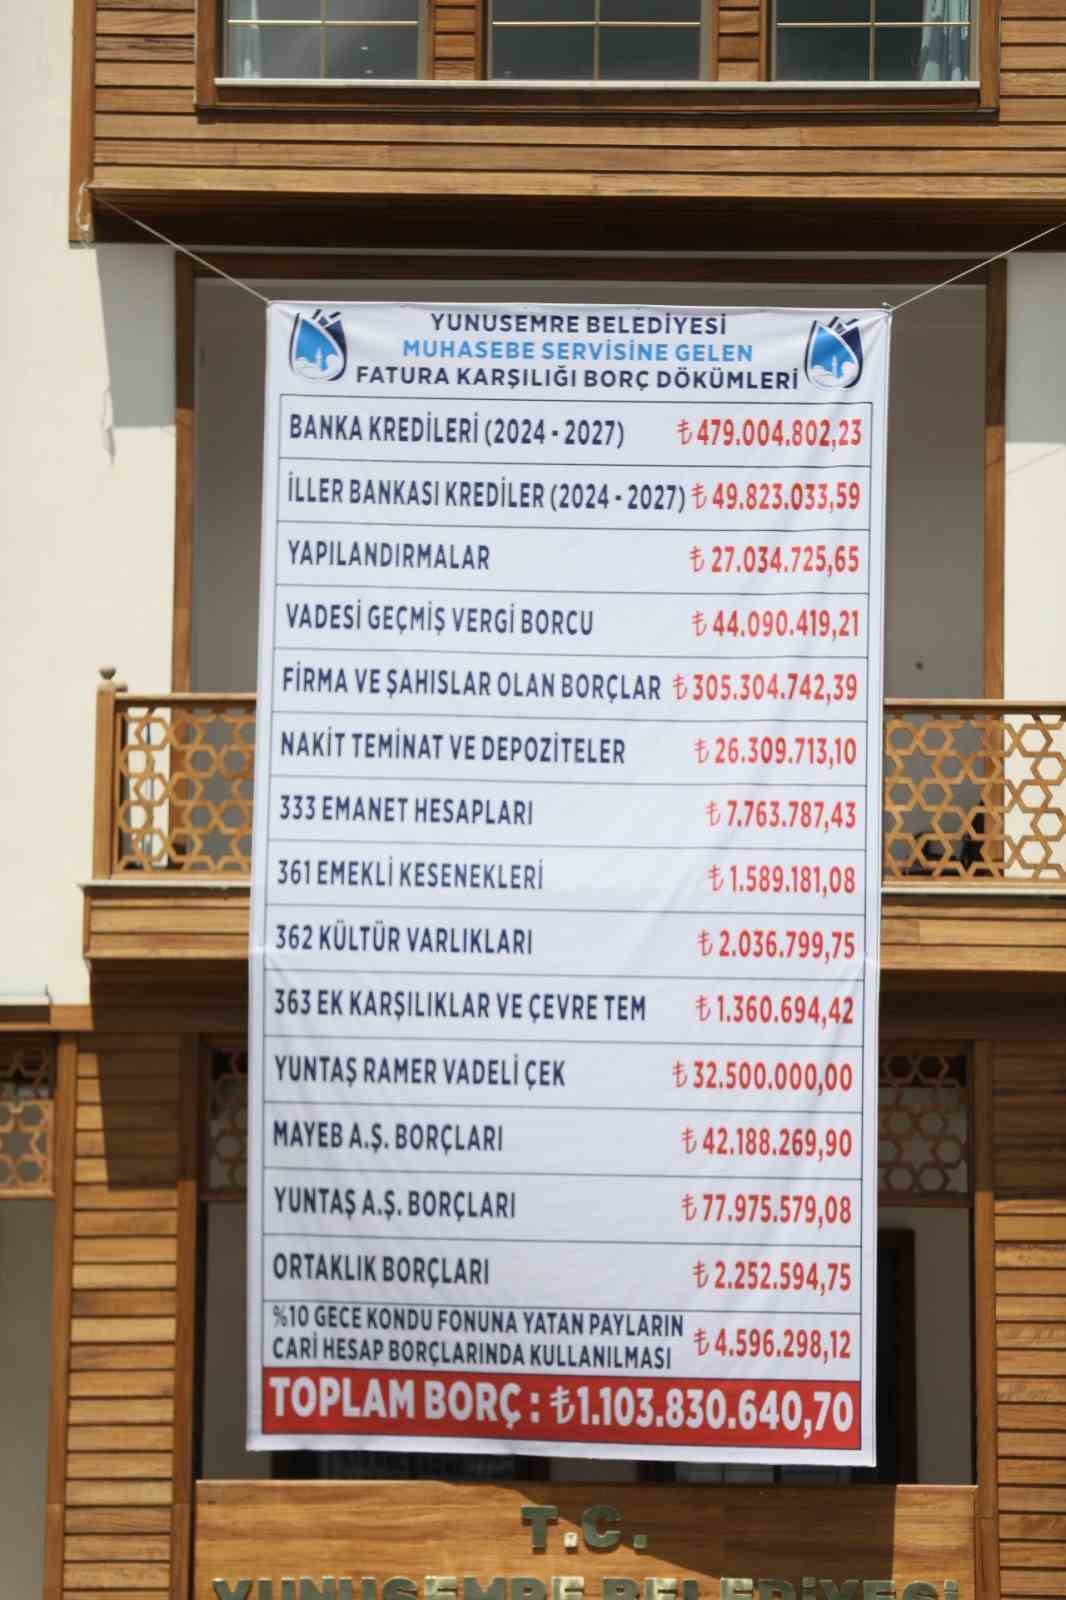 Yunusemre Belediyesi’nin borcu açıklandı: “1 milyar 103 milyon”
